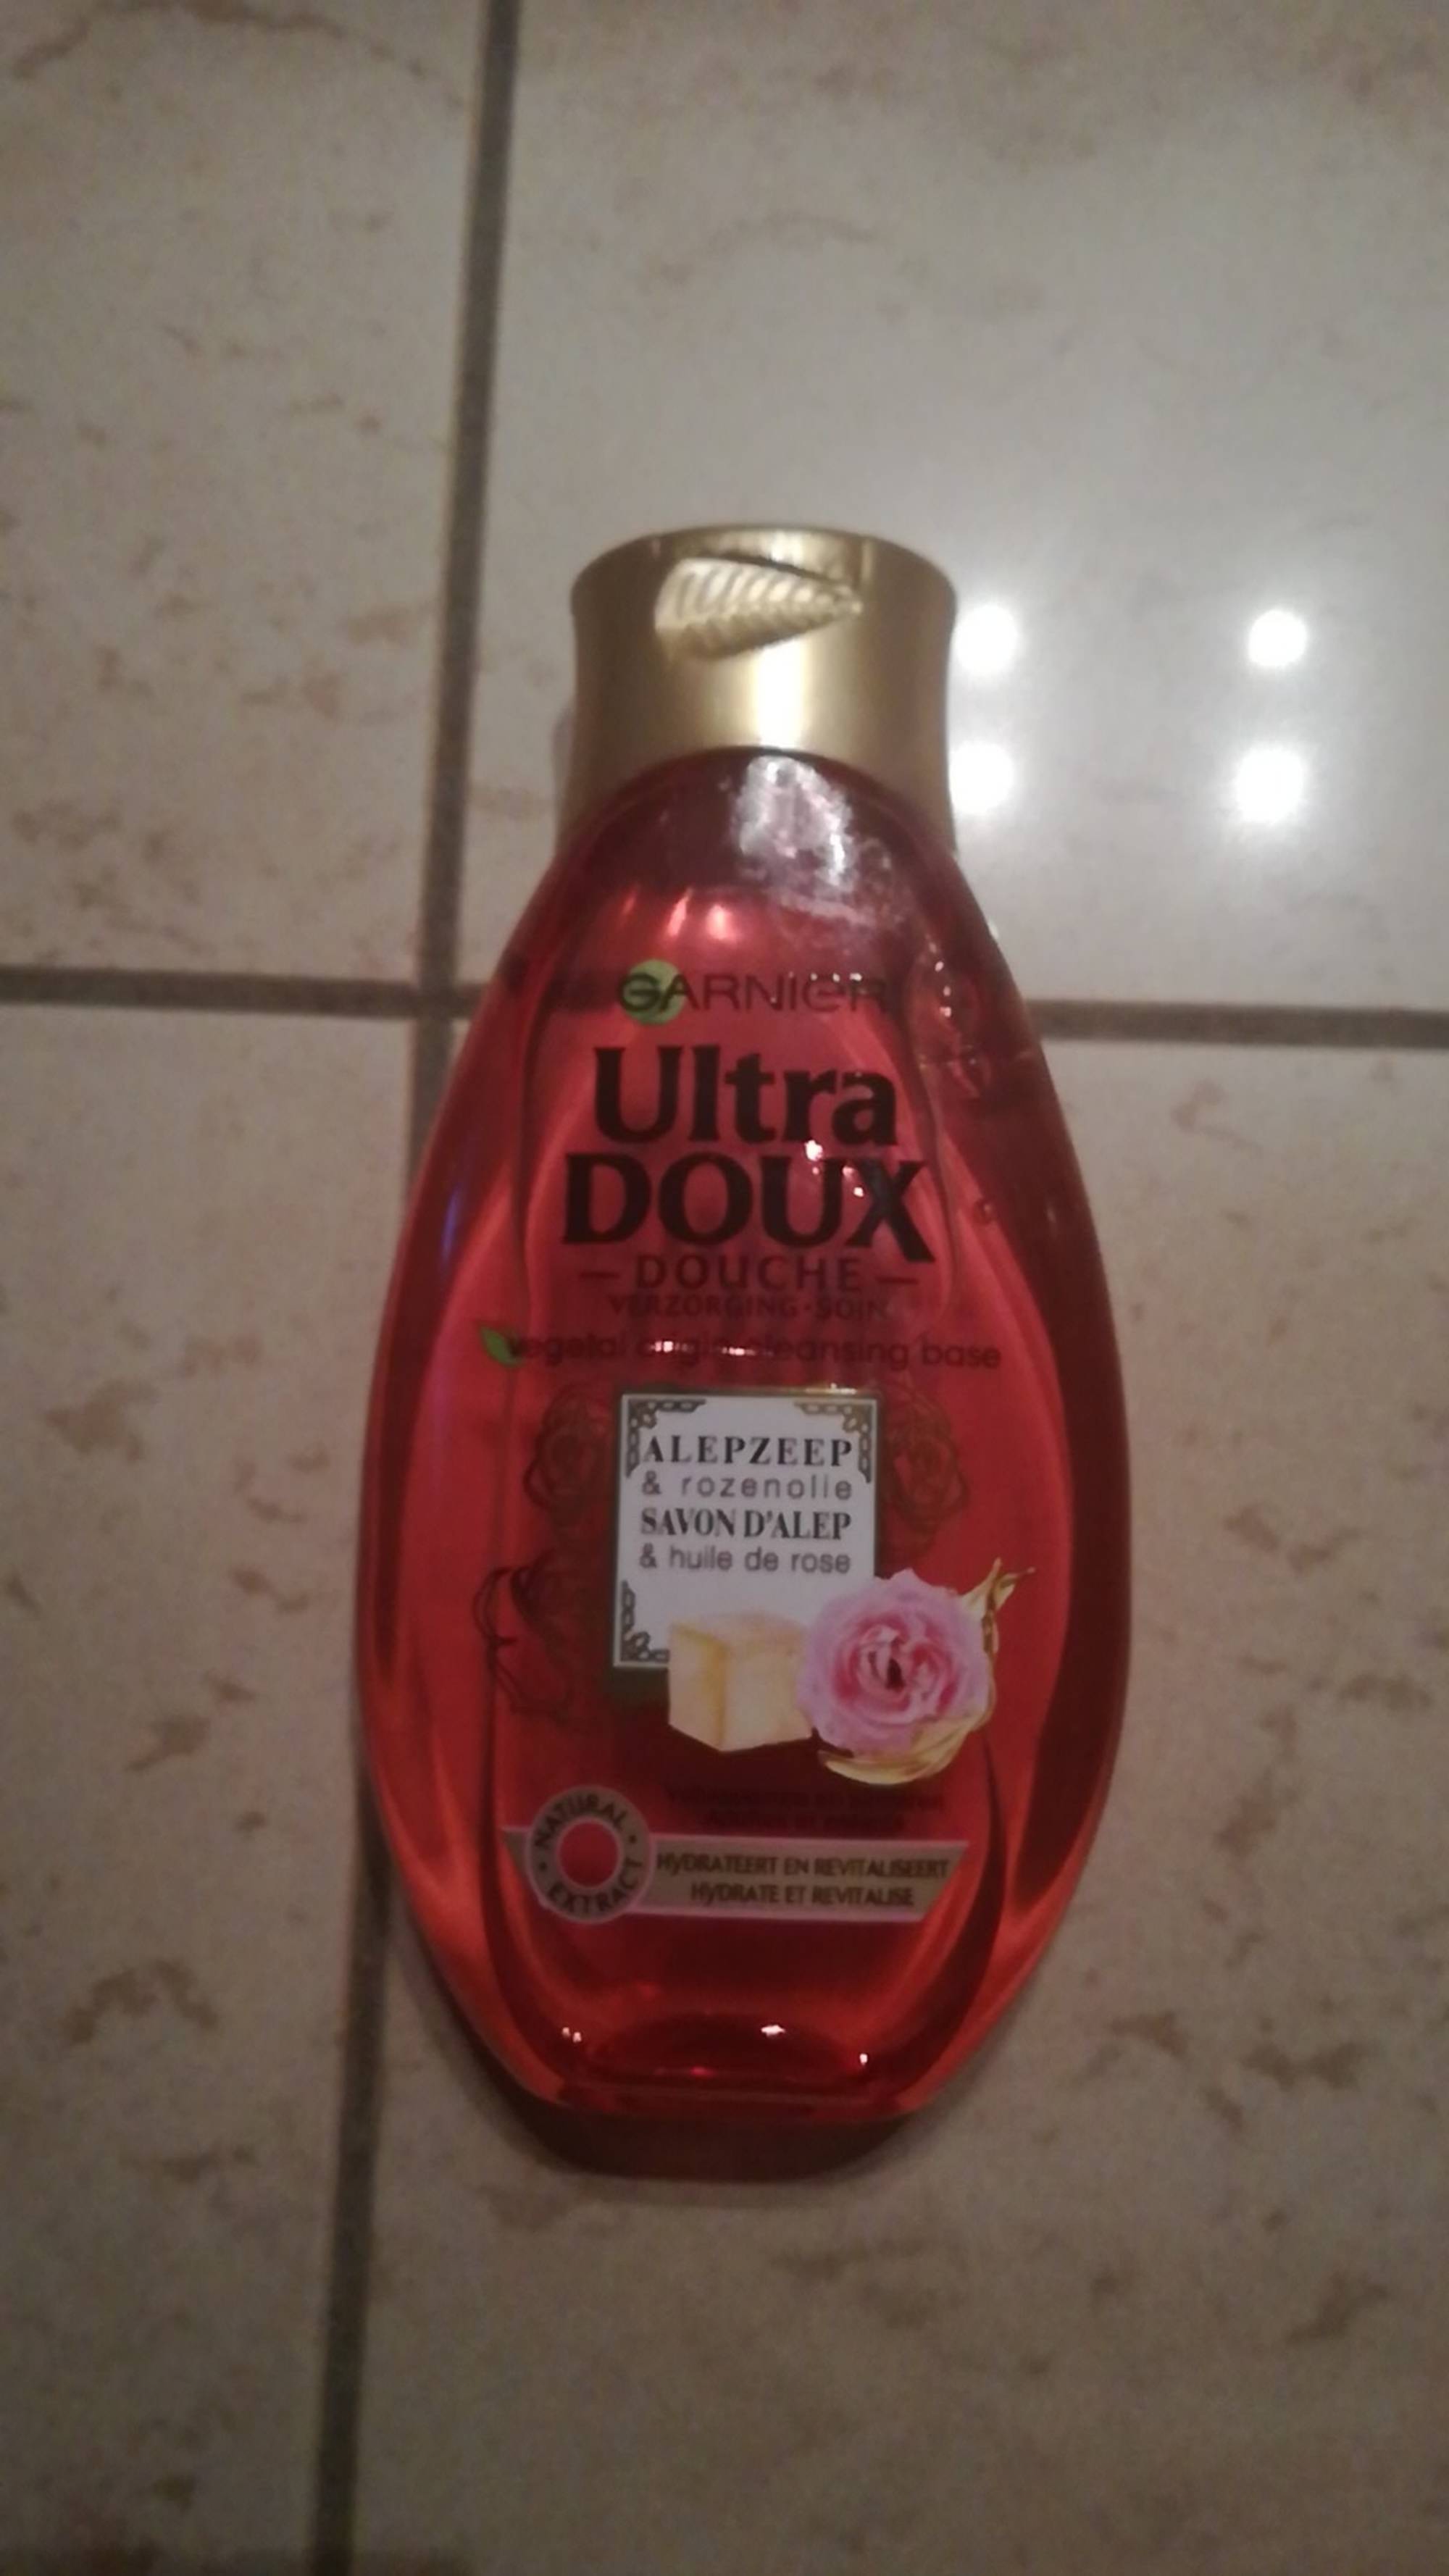 GARNIER - Ultra doux savon d'Alep - Douche à l'huile de rose